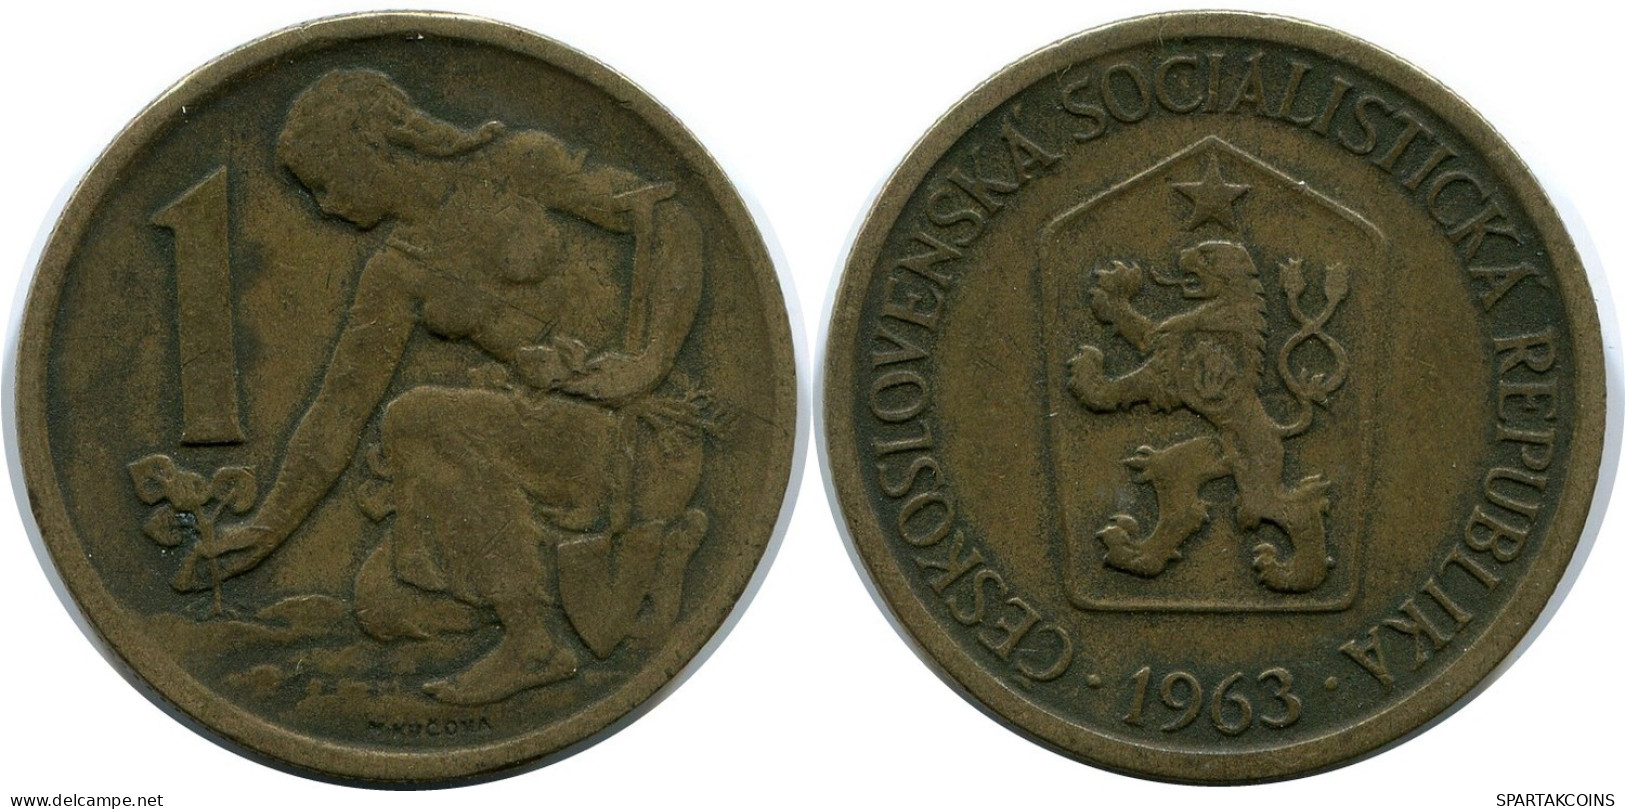 1 KORUNA 1936 TSCHECHOSLOWAKEI CZECHOSLOWAKEI SLOVAKIA Münze #AR227.D.A - Czechoslovakia